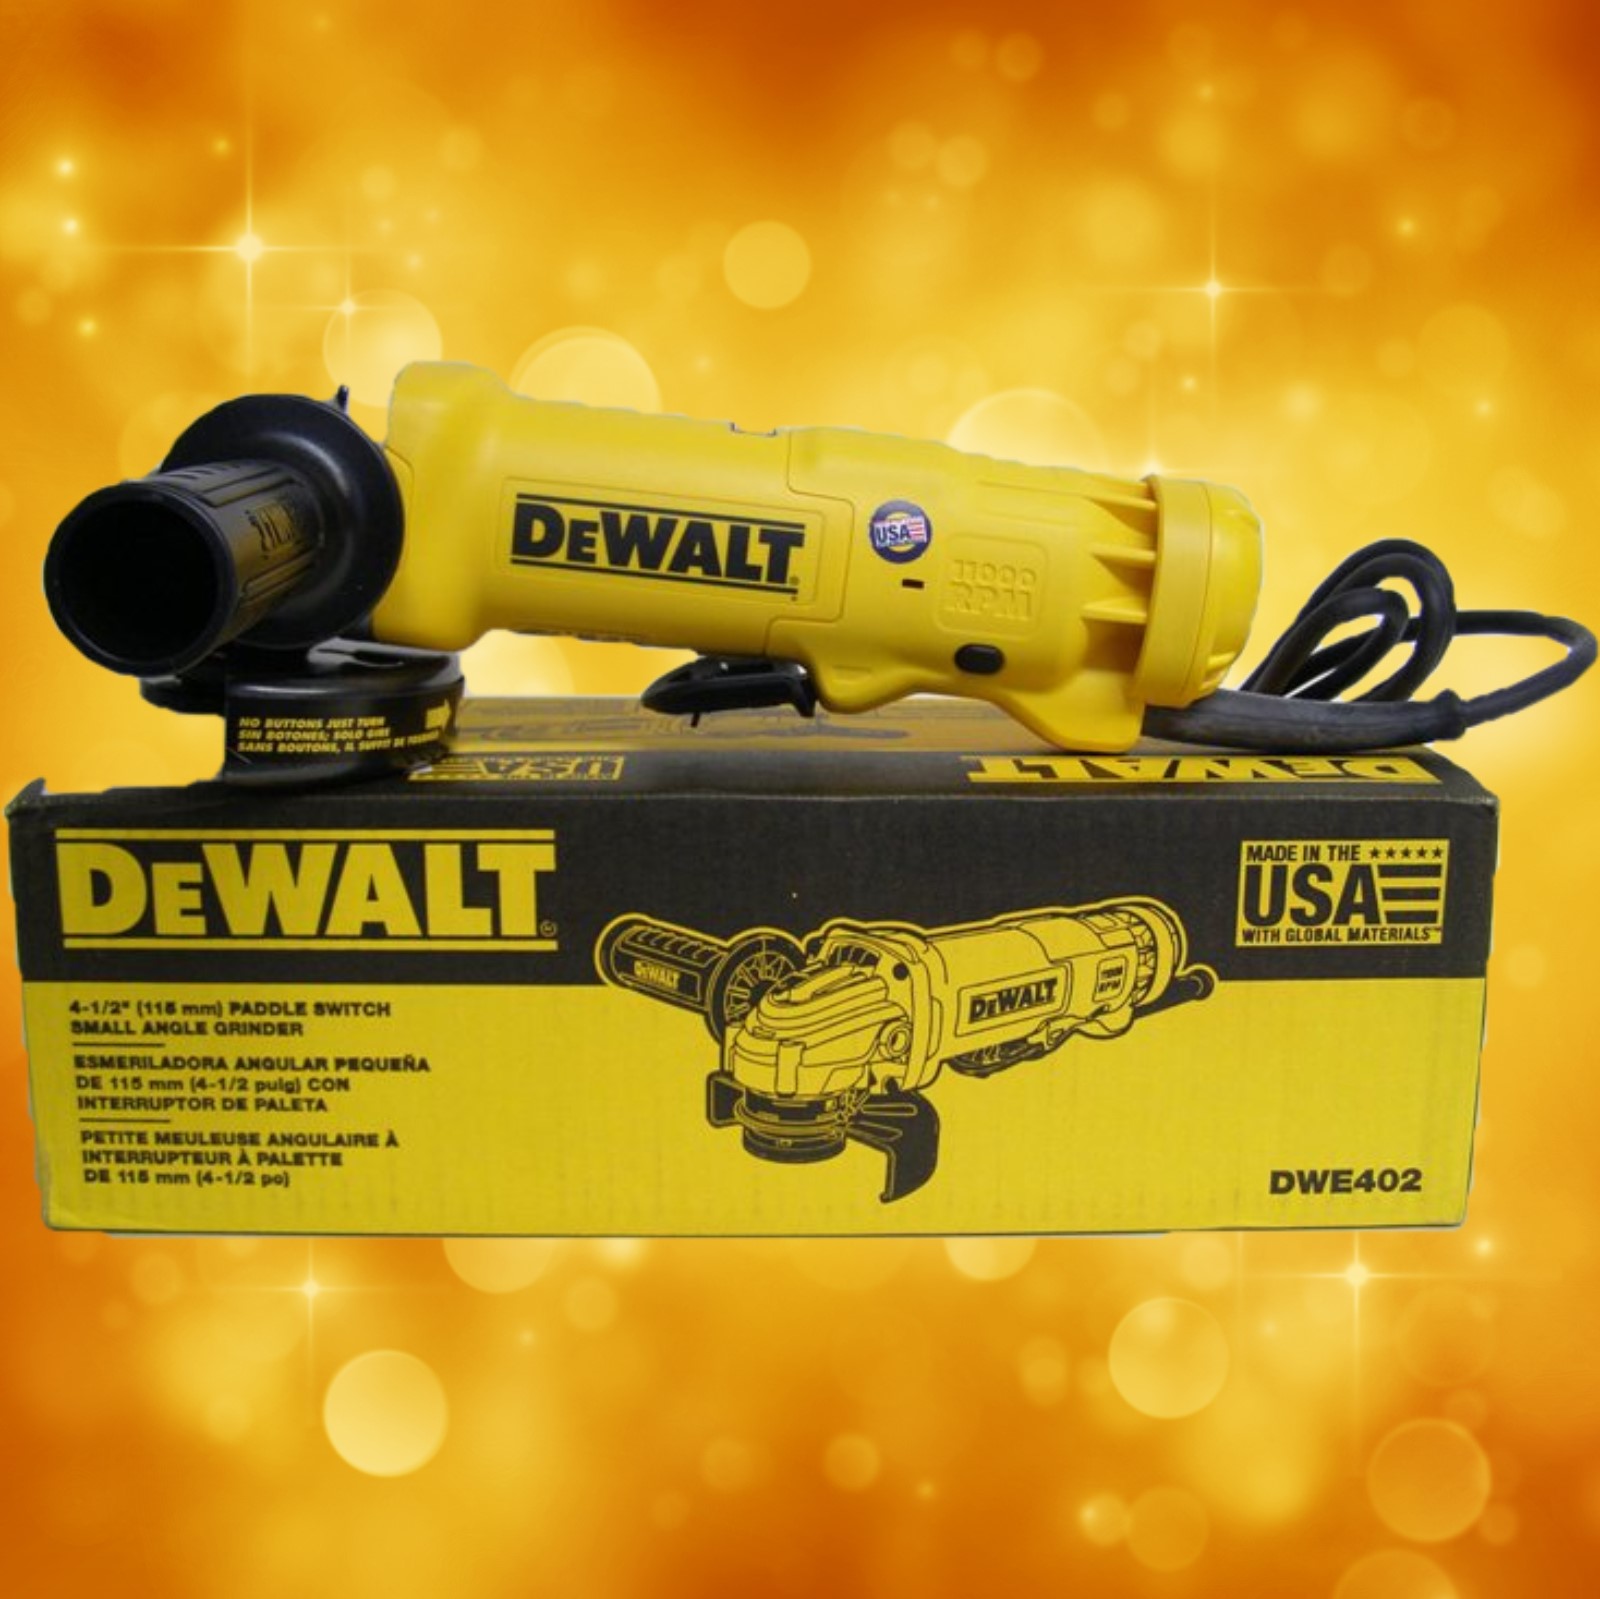 DeWalt DWE402 DWE402 4-1/2" (115mm) Small Angle Grinder DWE402